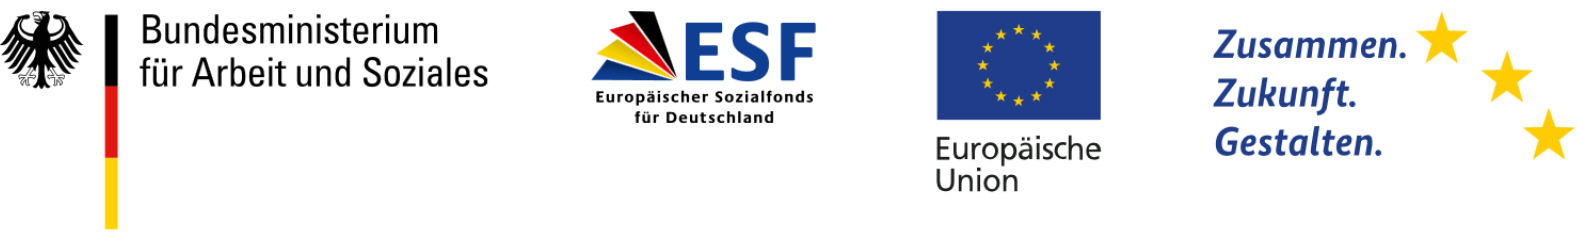 logos esf deutschland